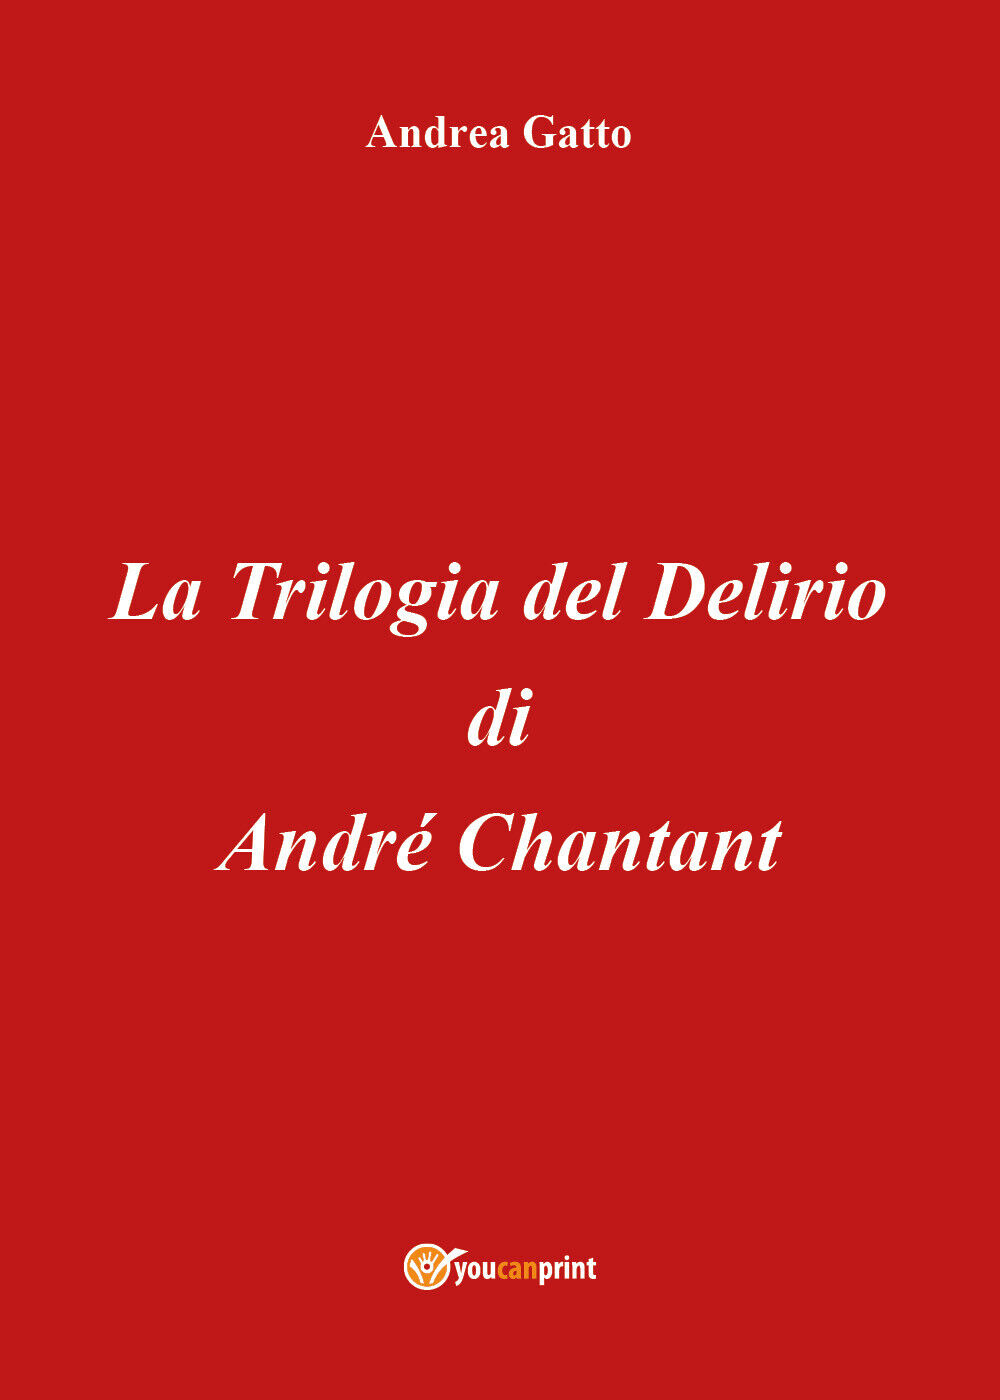 La trilogia del delirio di Andr? Chantant di Andrea Gatto,  2018,  Youcanprint